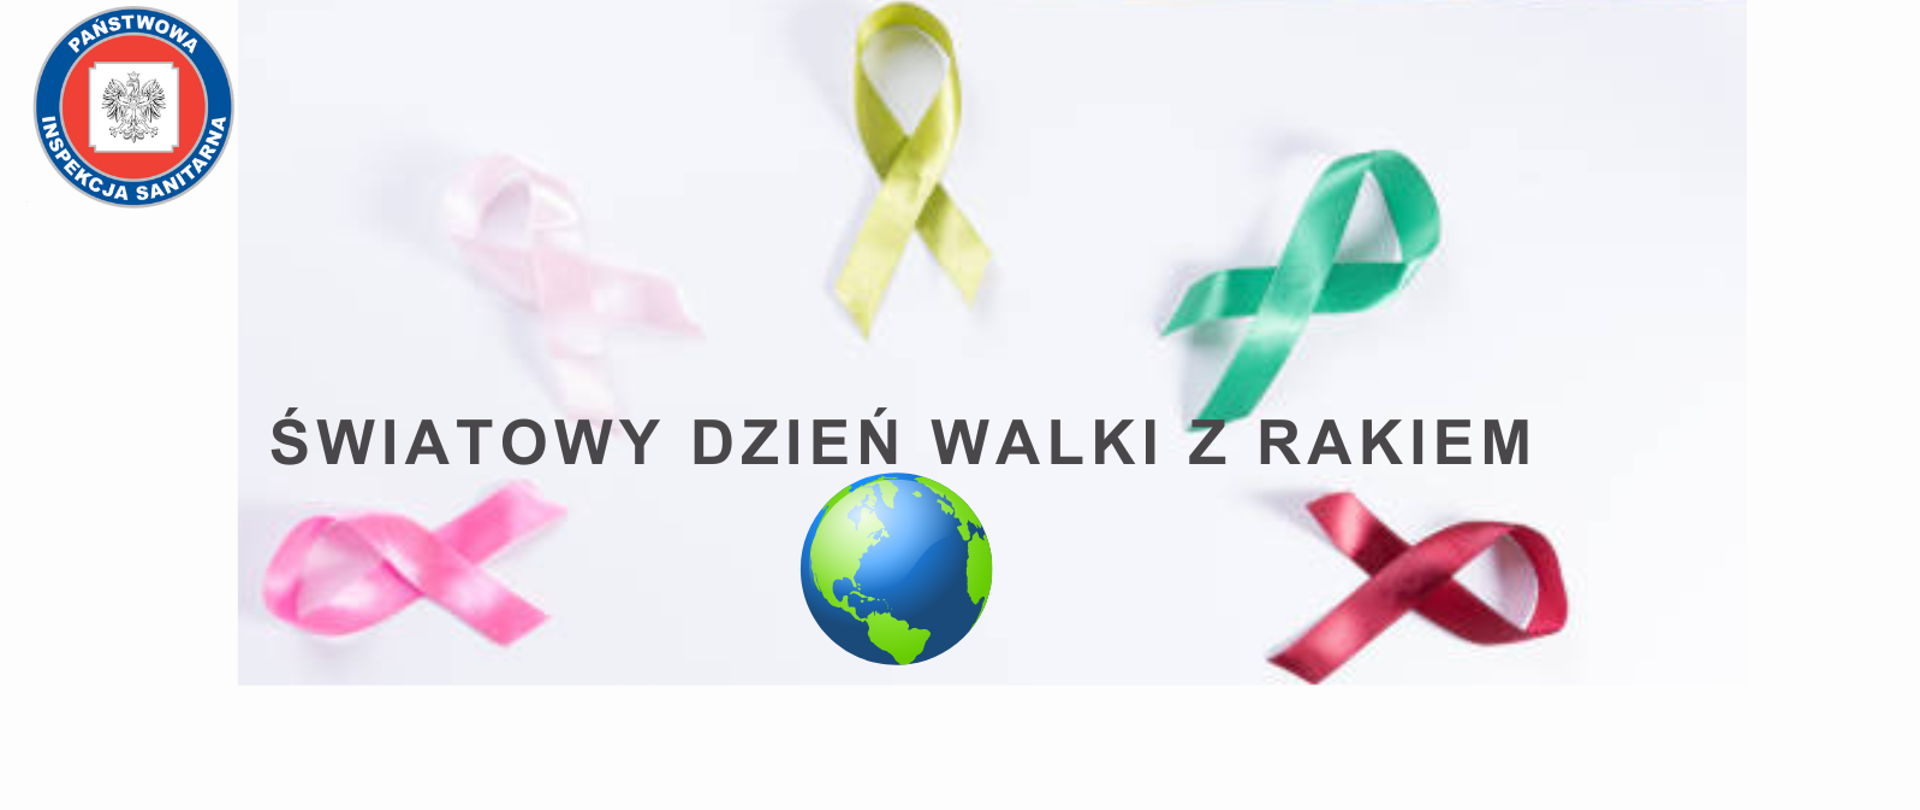 Światowy Dzień Walki z Rakiem , ziemia wstążeczki